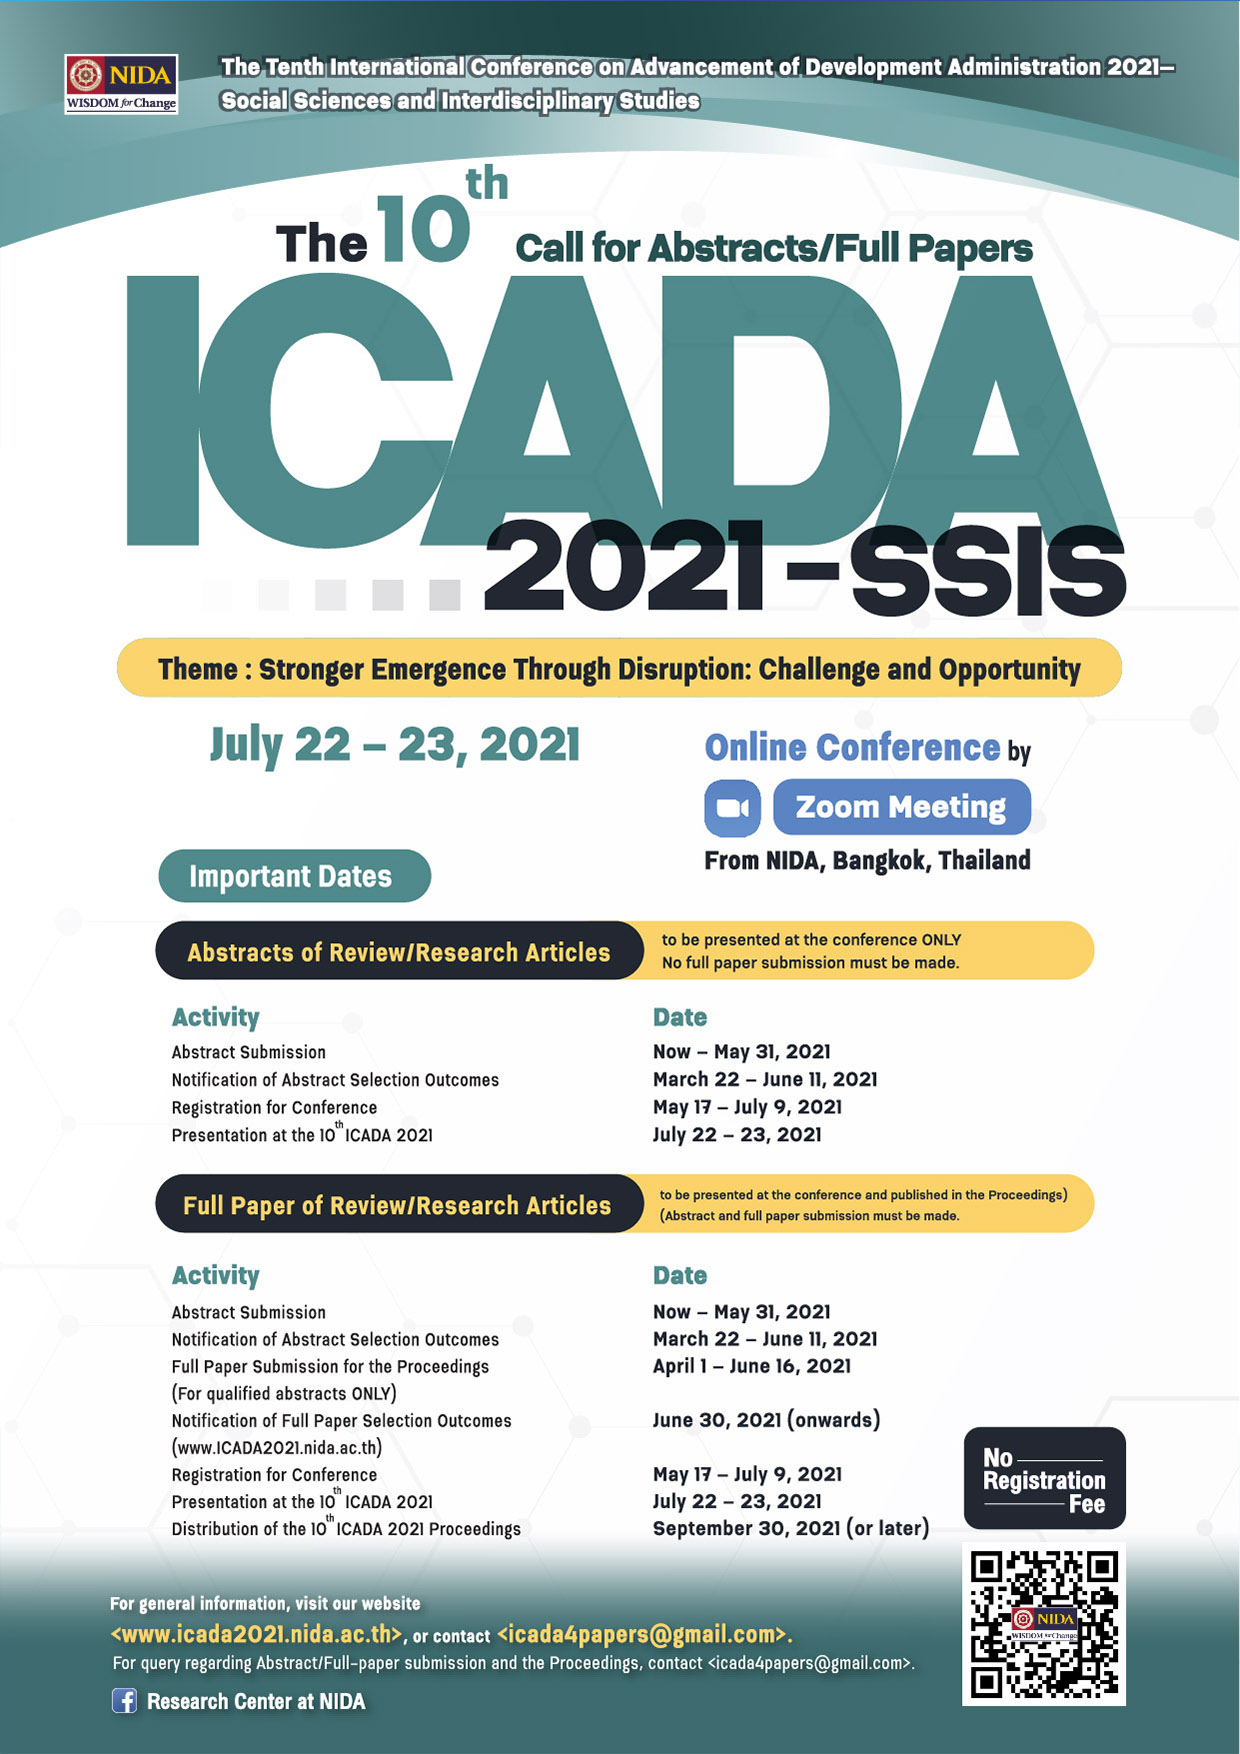 ขอเชิญร่วมงานประชุมวิชาการระดับนานาชาติ The Tenth International Conference on Advancement of Development Administration 2021—Social Sciences and Interdisciplinary Studies (the 10th ICADA 2021—SSIS) (the 10th ICADA 2021—SSIS)